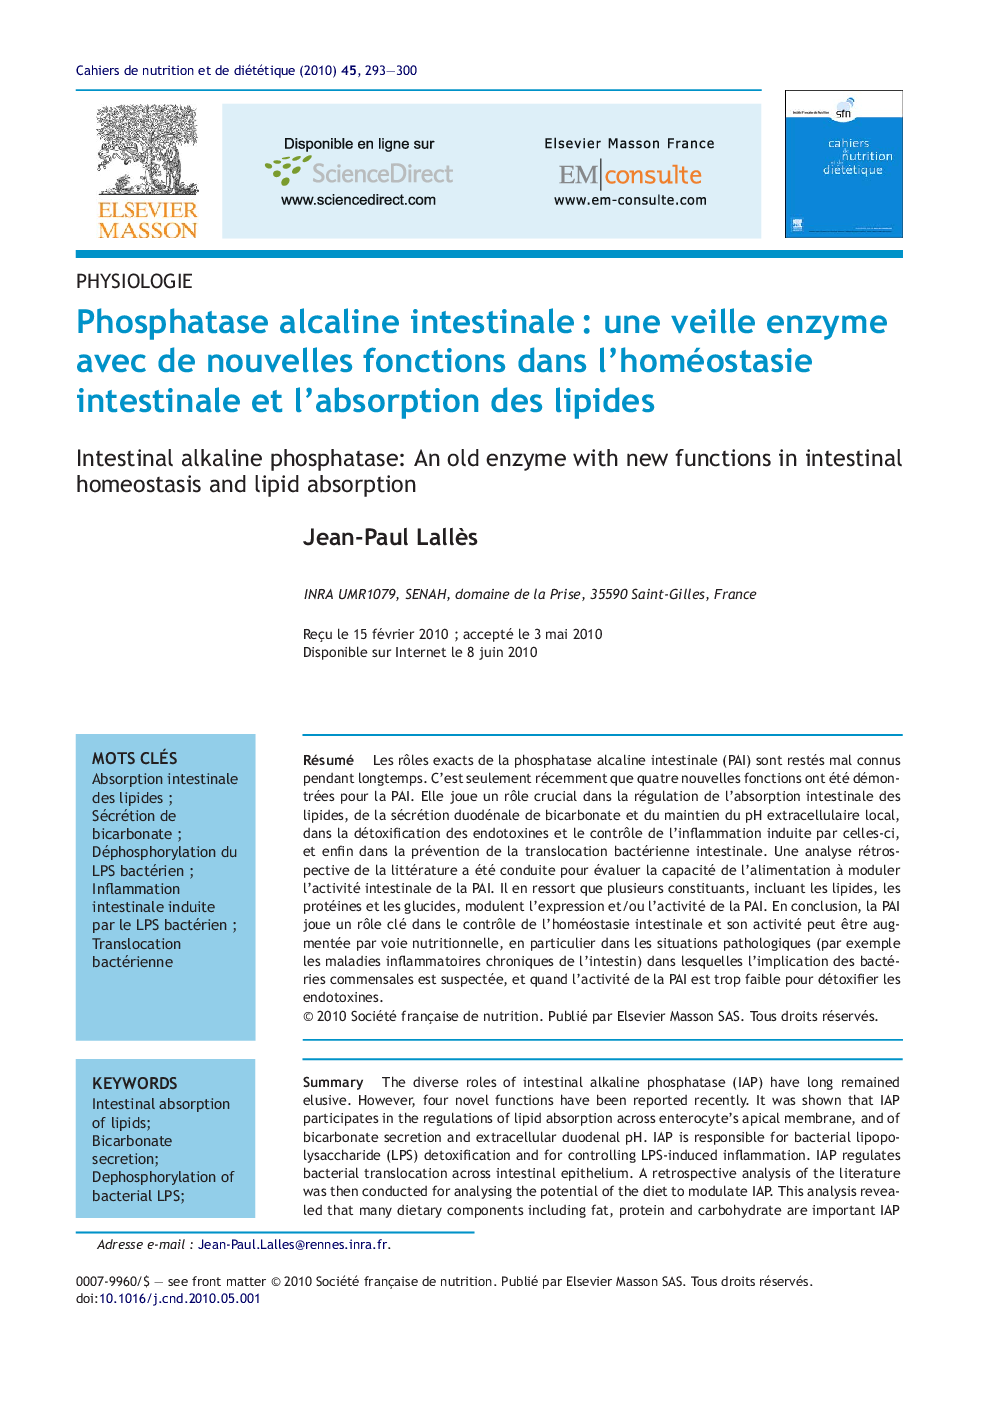 Phosphatase alcaline intestinaleÂ : une veille enzyme avec de nouvelles fonctions dans l'homéostasie intestinale et l'absorption des lipides